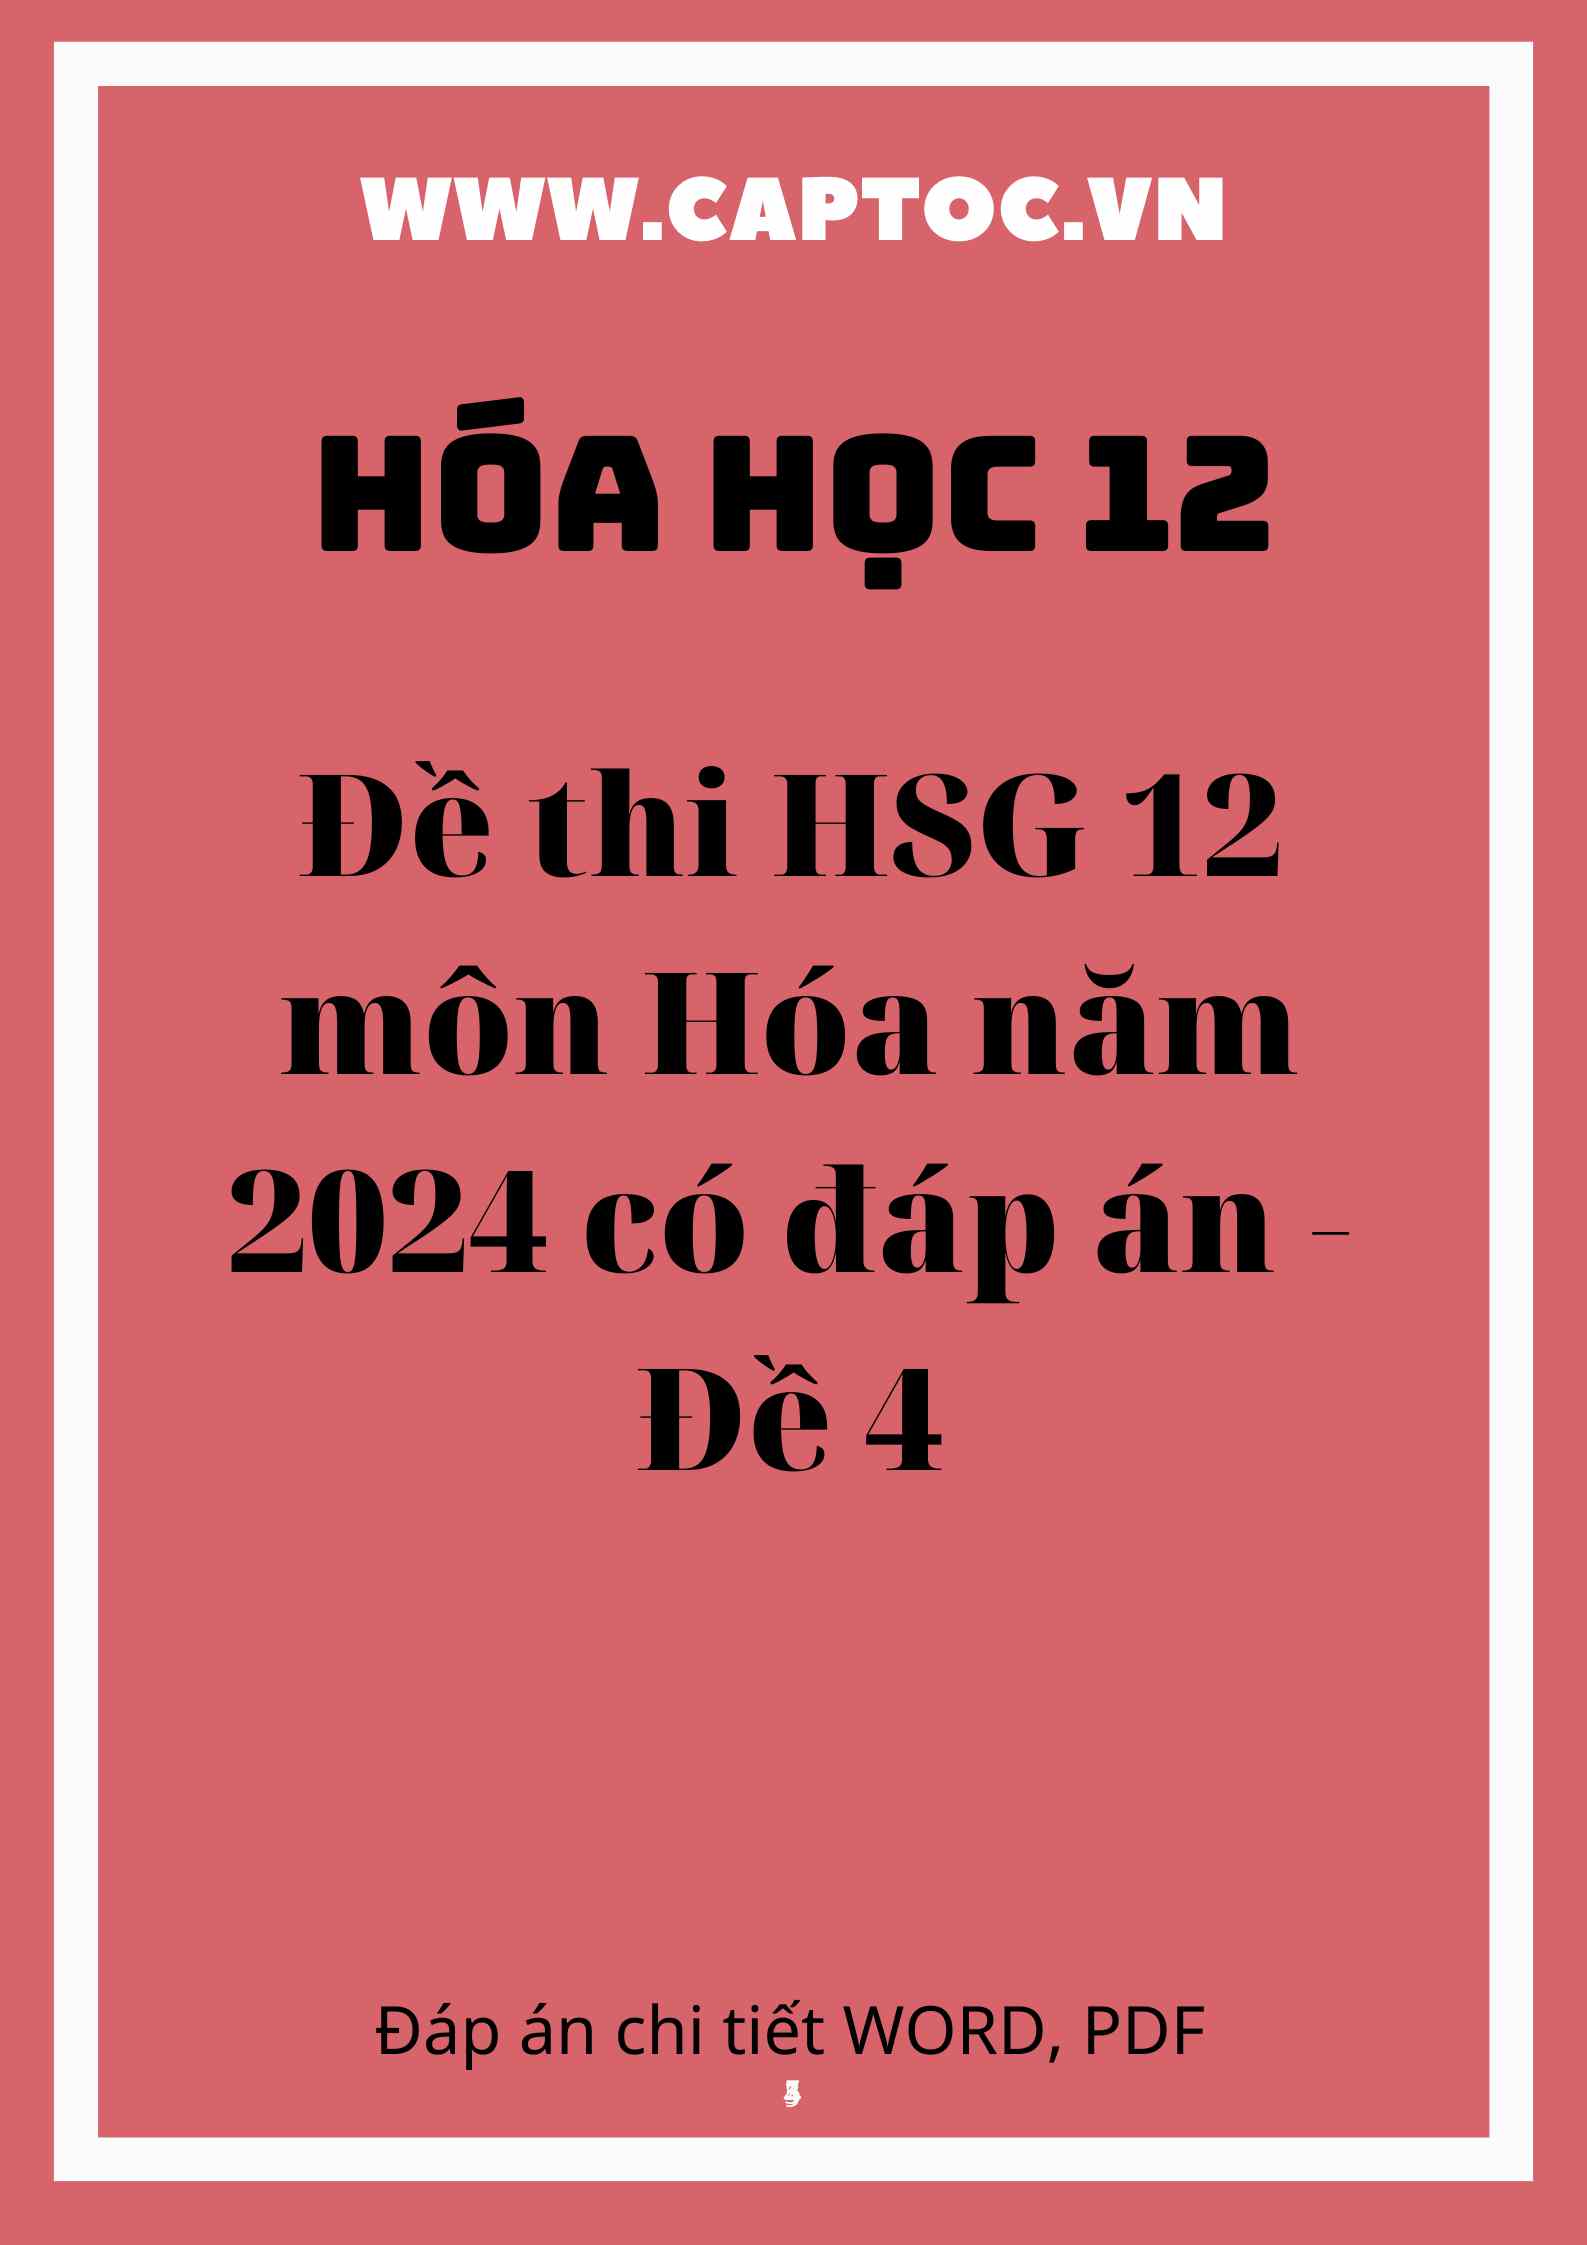 Đề thi HSG 12 môn Hóa năm 2024 có đáp án - Đề 4